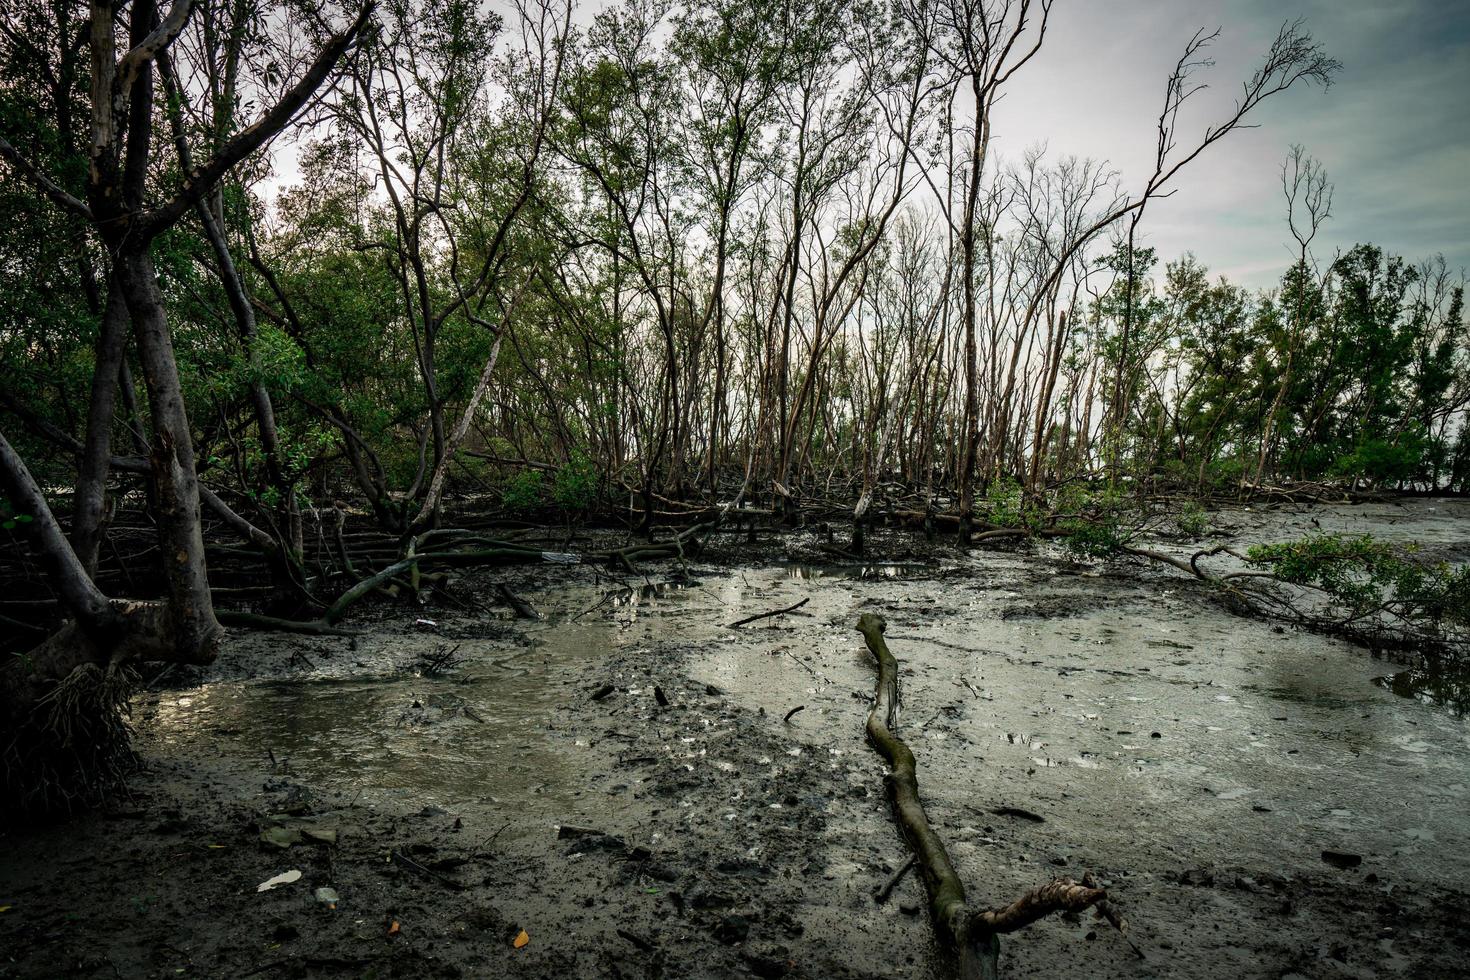 hojas verdes de árbol de mangle y árbol muerto en el bosque de mangle como fondo con cielo blanco claro. escena emocional oscura. foto